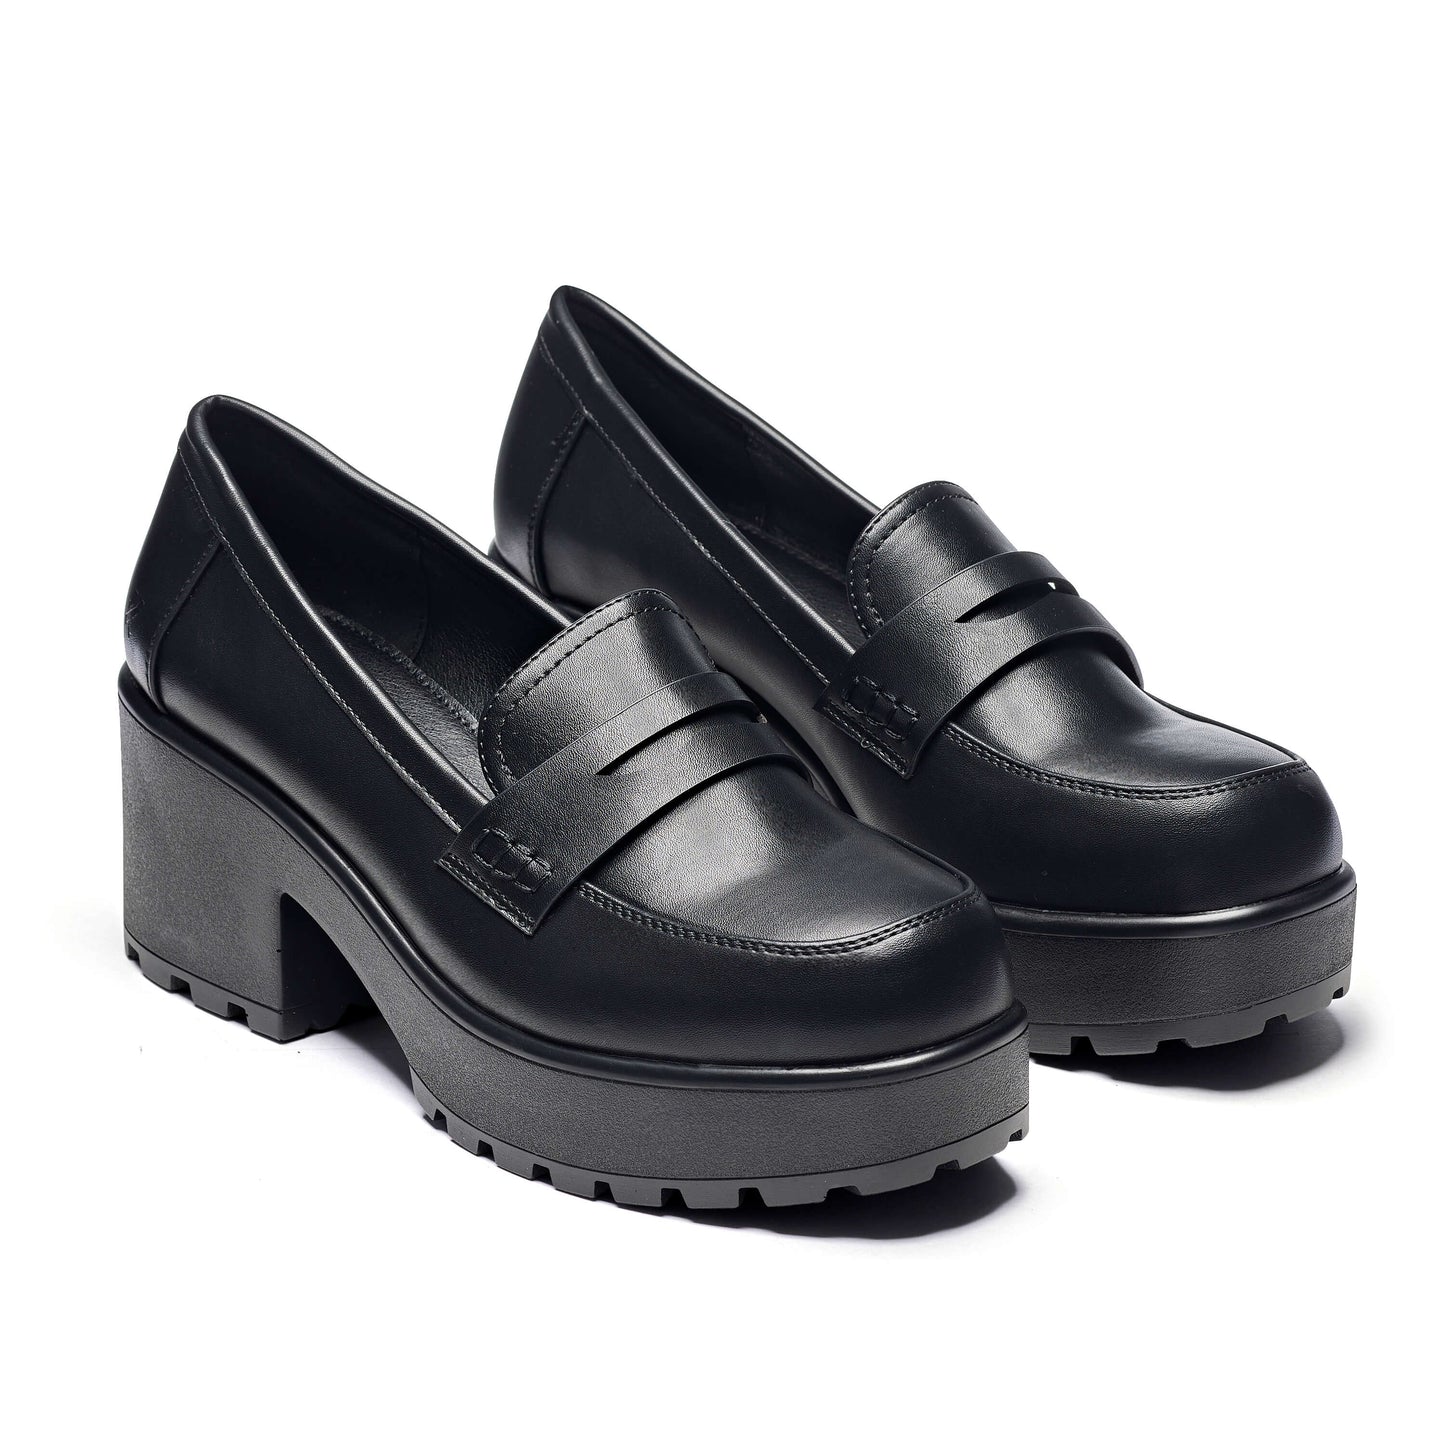 Vigo Classic Chunky Shoes - Shoes - KOI Footwear - Black - Three-Quarter View